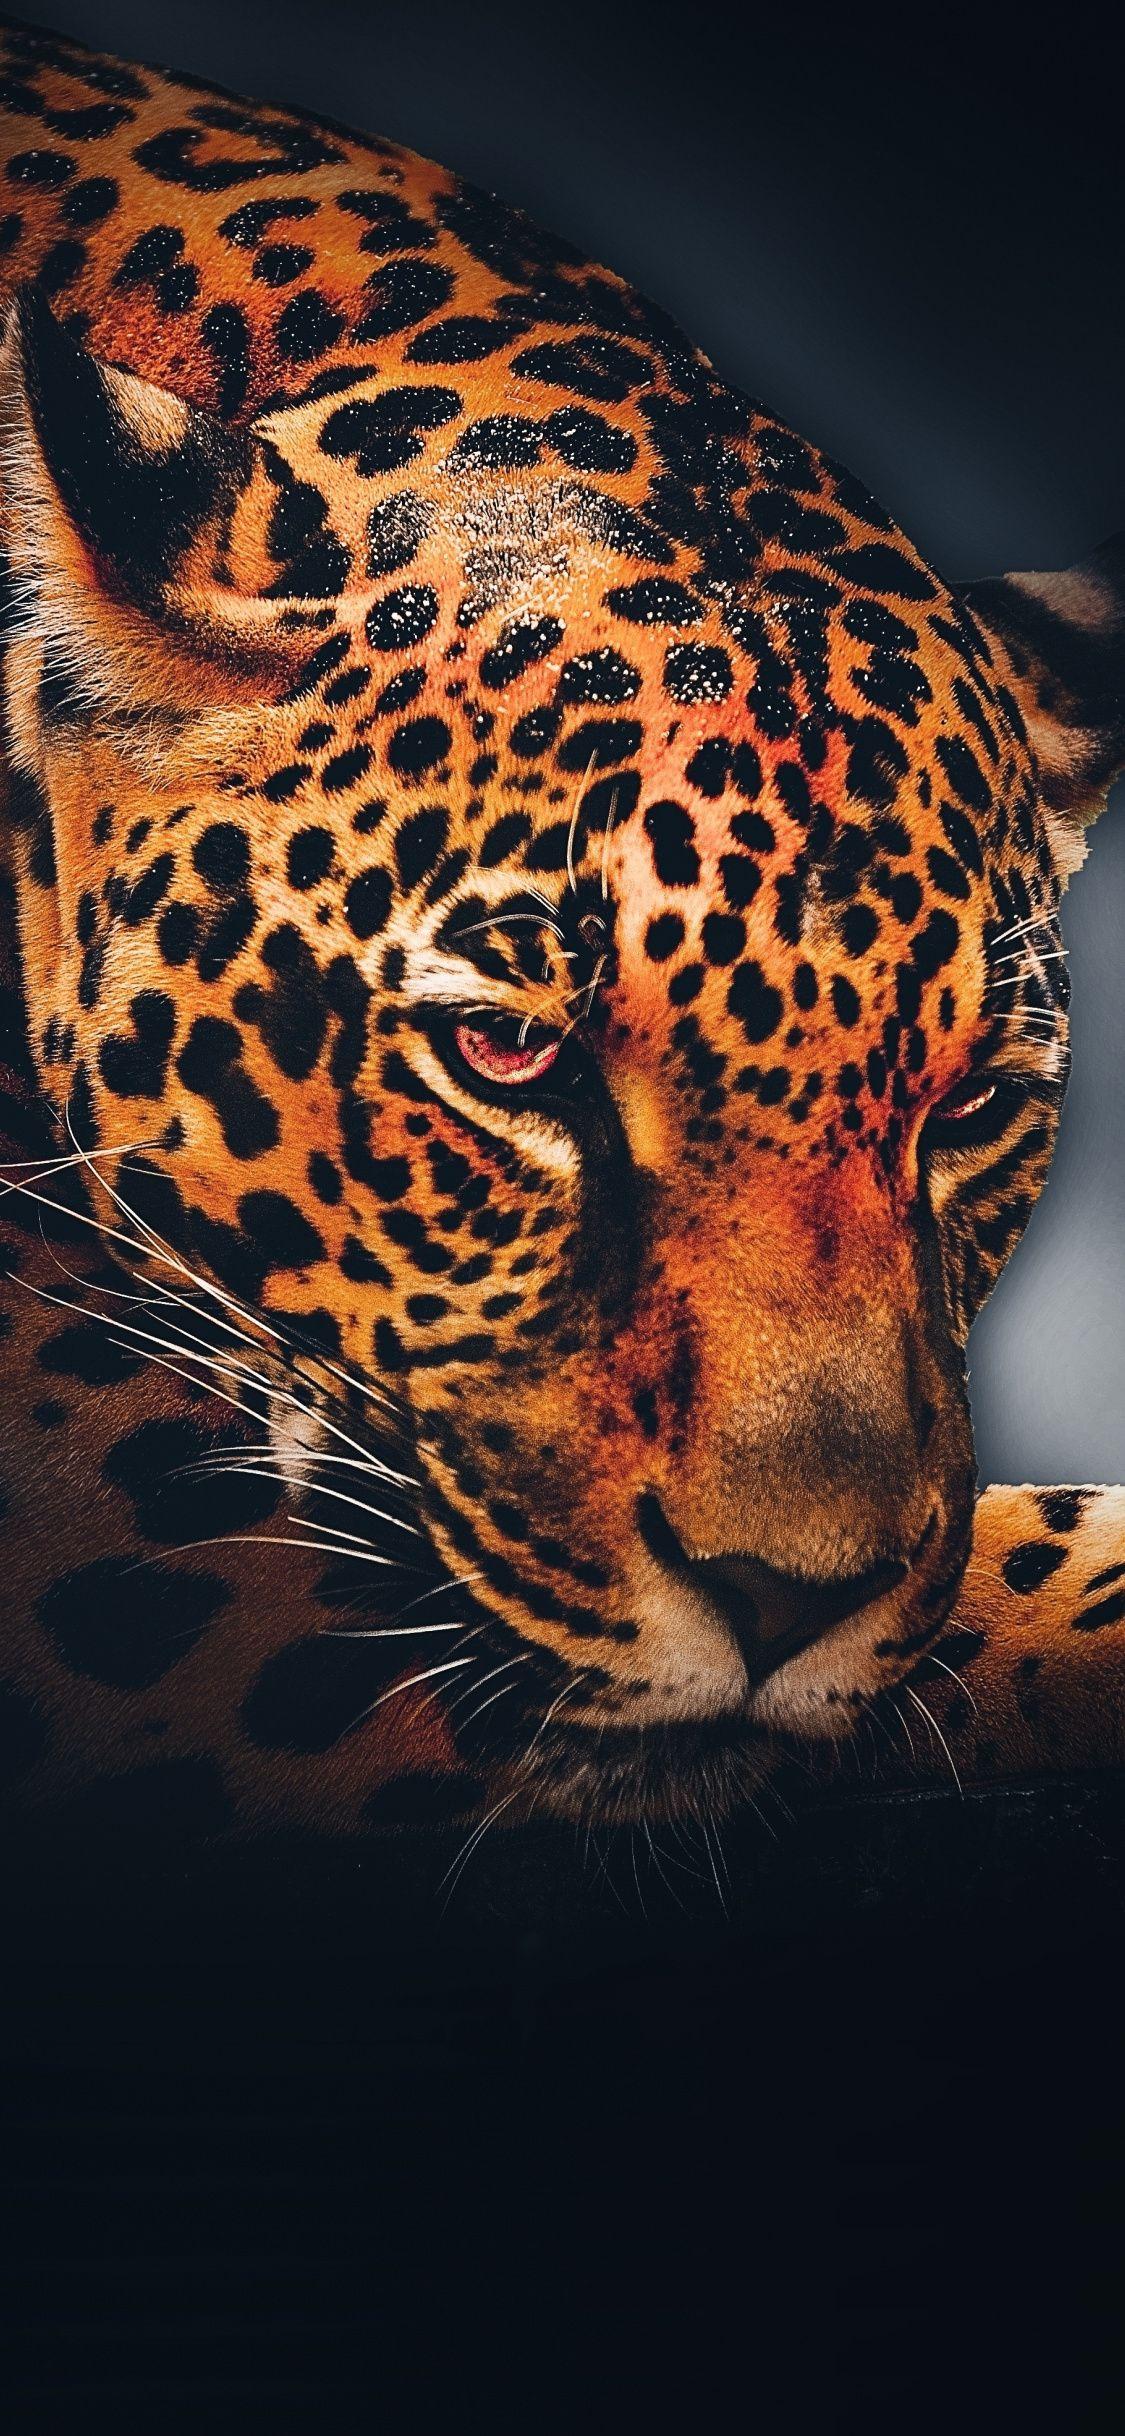 1125x2436 Leopard, động vật, thư giãn, hình nền chân dung.  Hình nền động vật, Hình nền động vật hoang dã, Hình nền động vật hoang dã